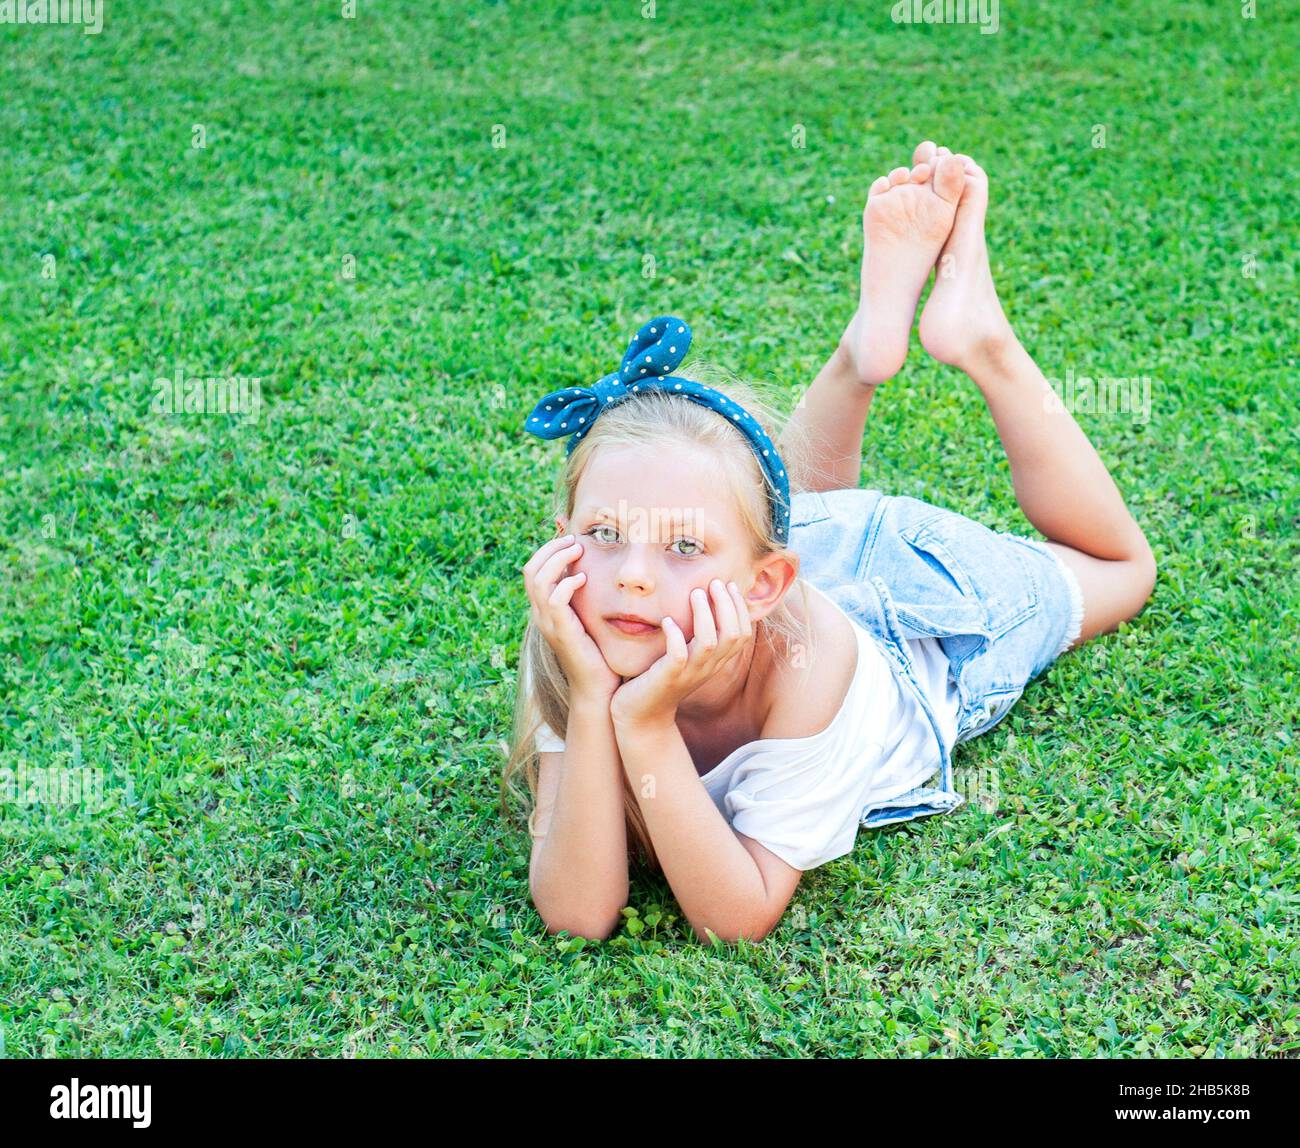 Сheerful kleines Mädchen in einem Jeansjumpsuit, auf einem grünen Gras liegend Stockfoto